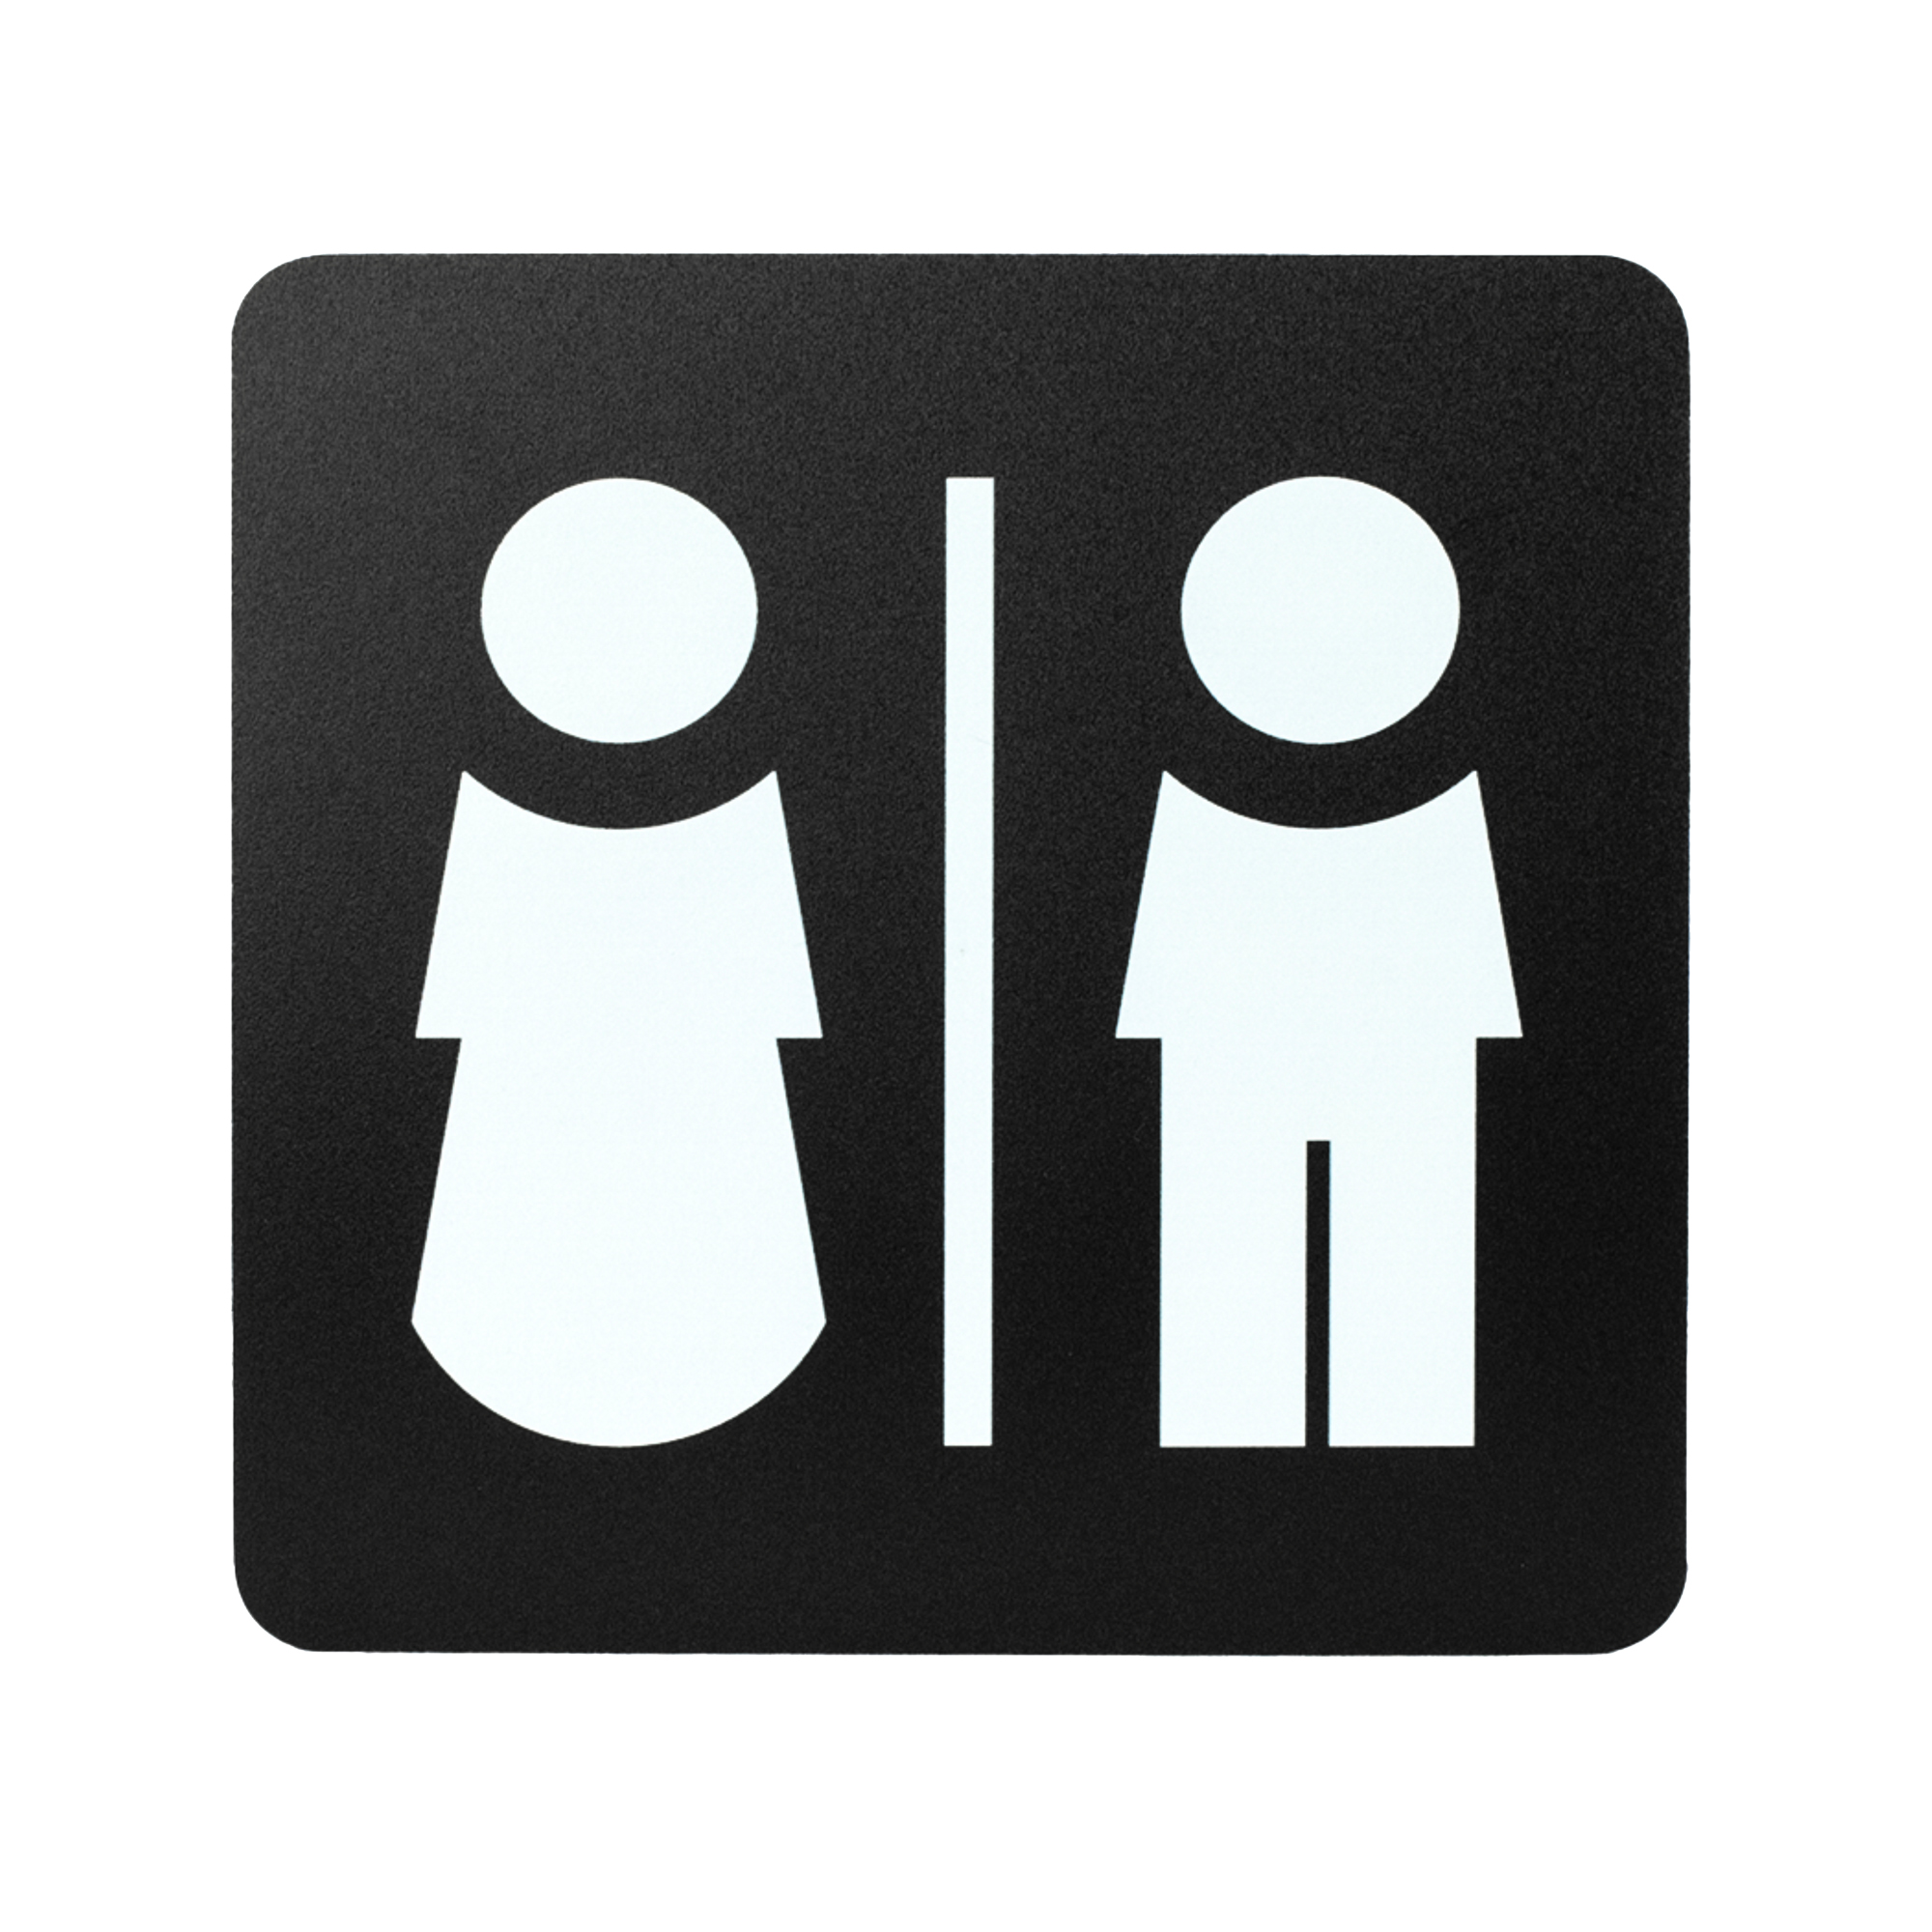 Pittogramma adesivo - toilette uomo/donna - 16 x 16 cm - PVC - nero/bianco - Stilcasa